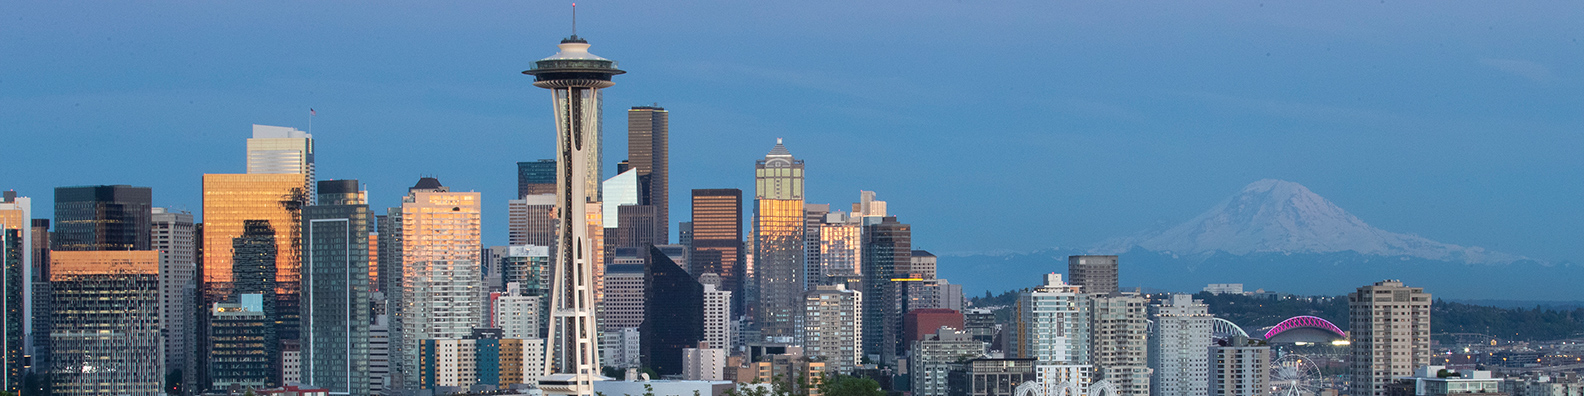 Background Image: Seattle Skyline